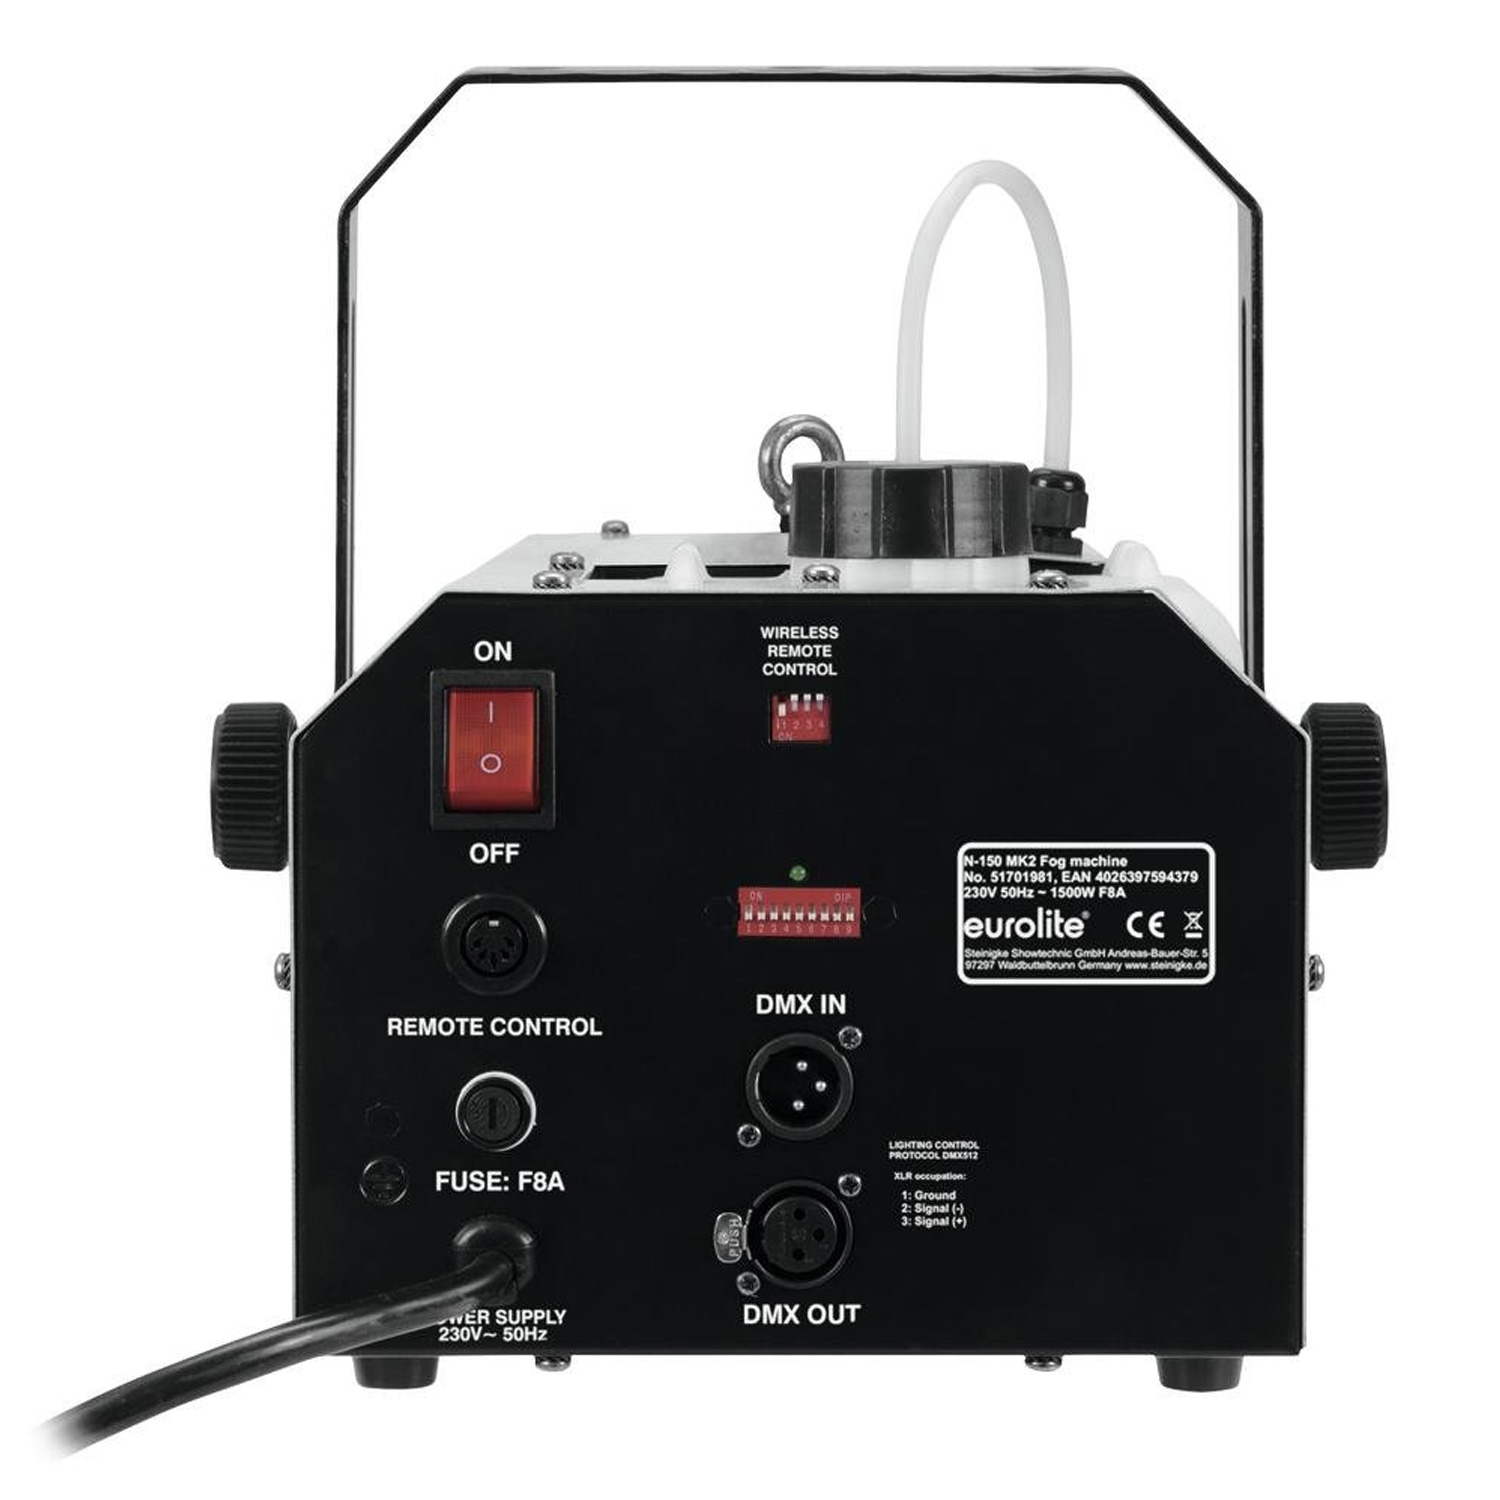 N-150 MK2 Nebelmaschine mit Timerfernbedienung und Funk